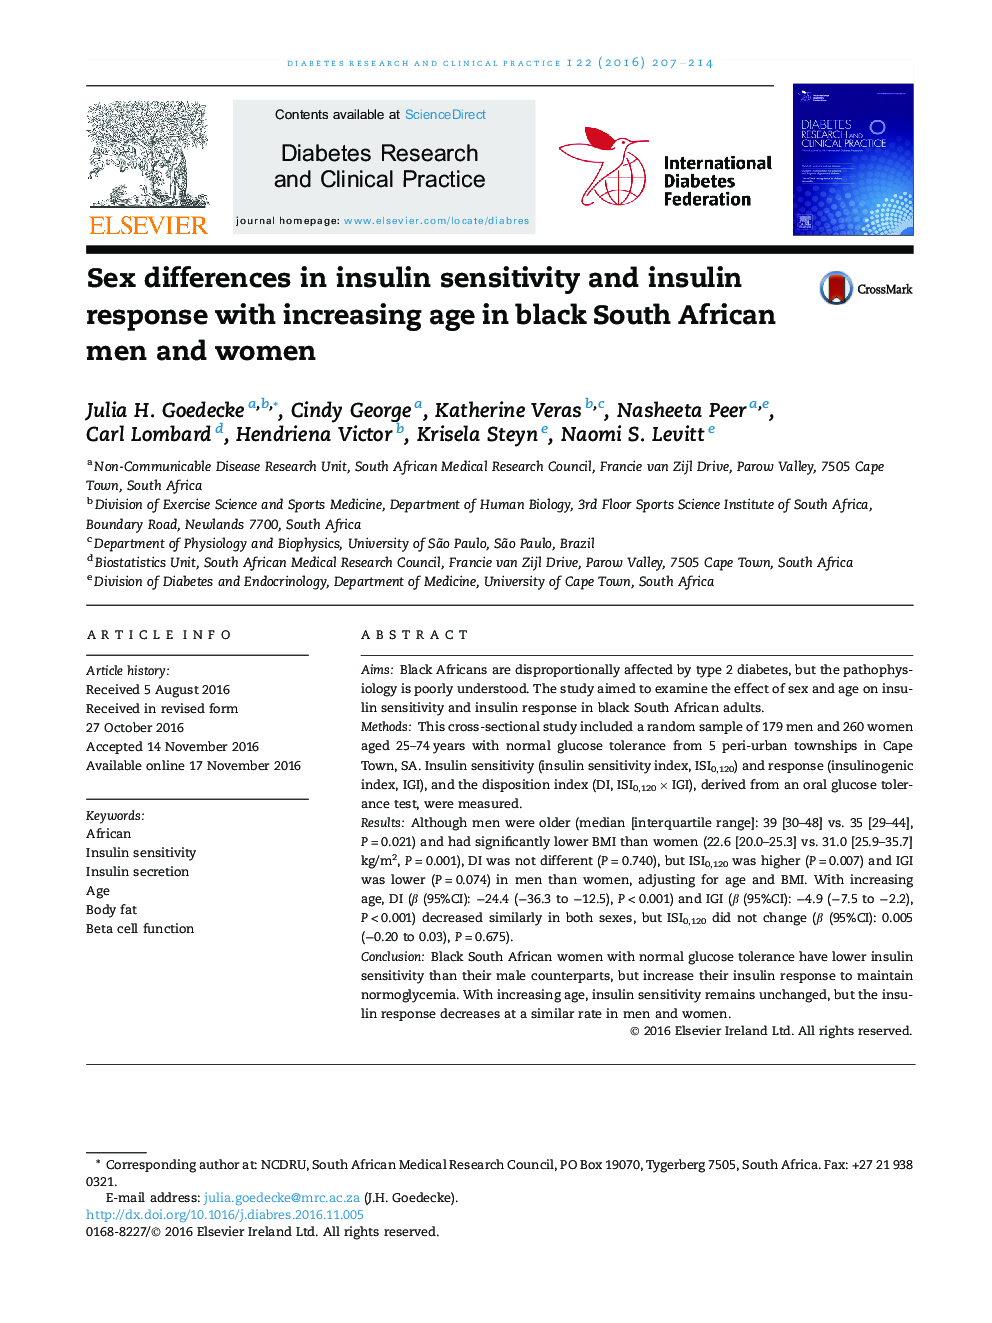 تفاوت جنسی در حساسیت به انسولین و پاسخ انسولین با افزایش سن زنان و مردان سیاه پوست آفریقای جنوبی 